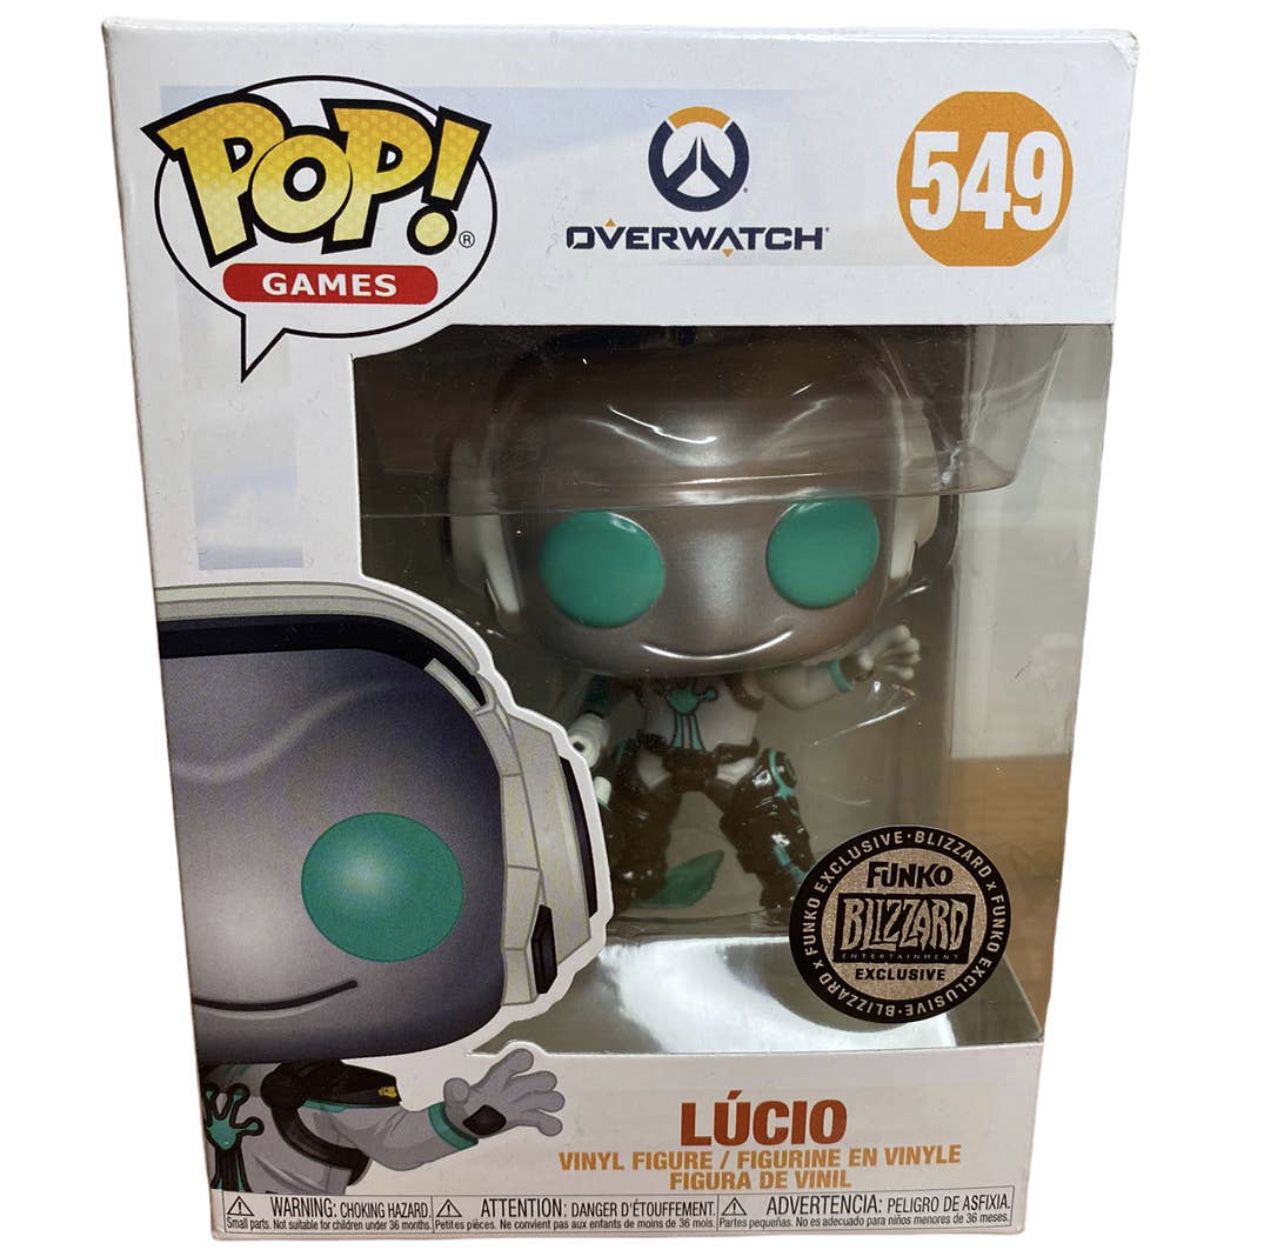 Funko Pop! Games Overwatch 549 Lucio Blizzard Con 2019 Exclusive